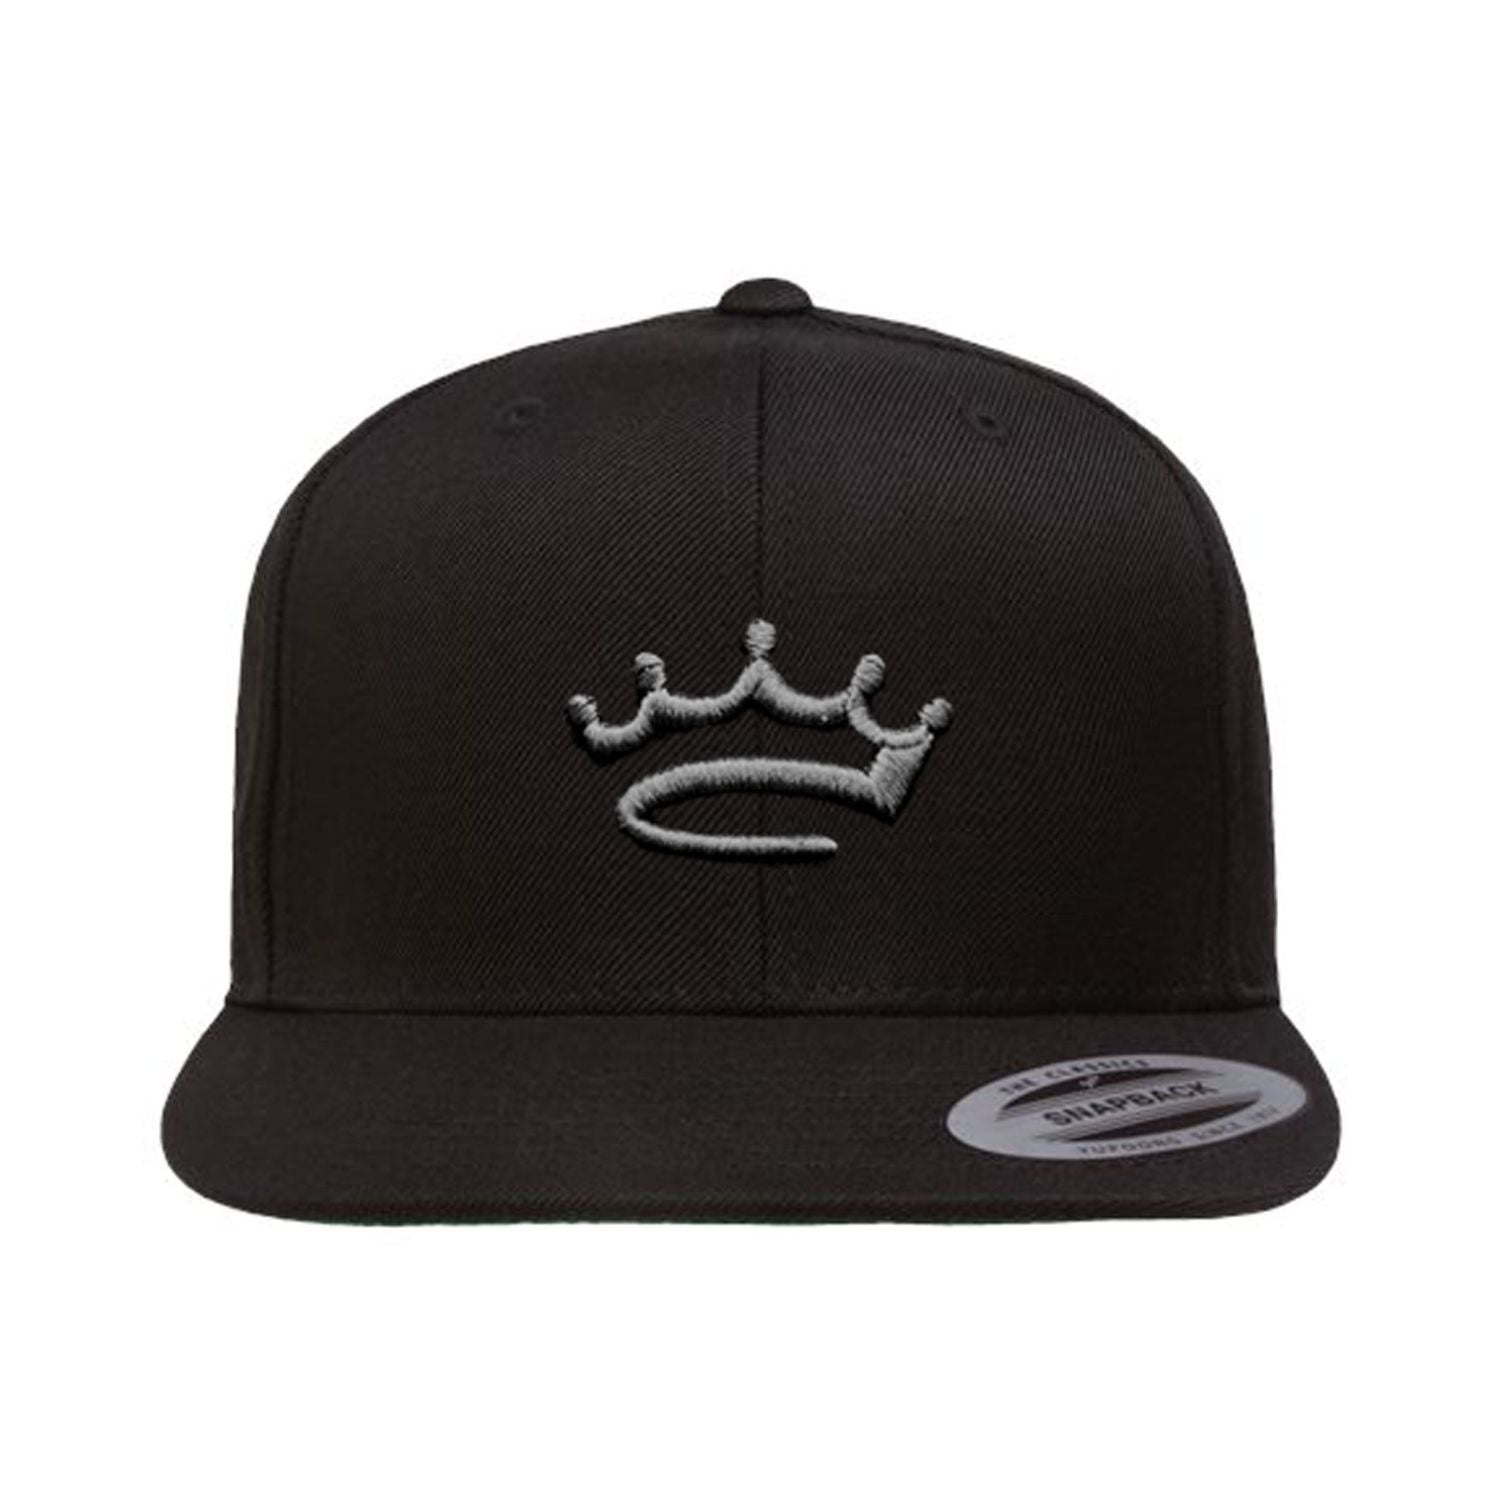 Black / Grey - snapback - hat - Crowned Brand ™